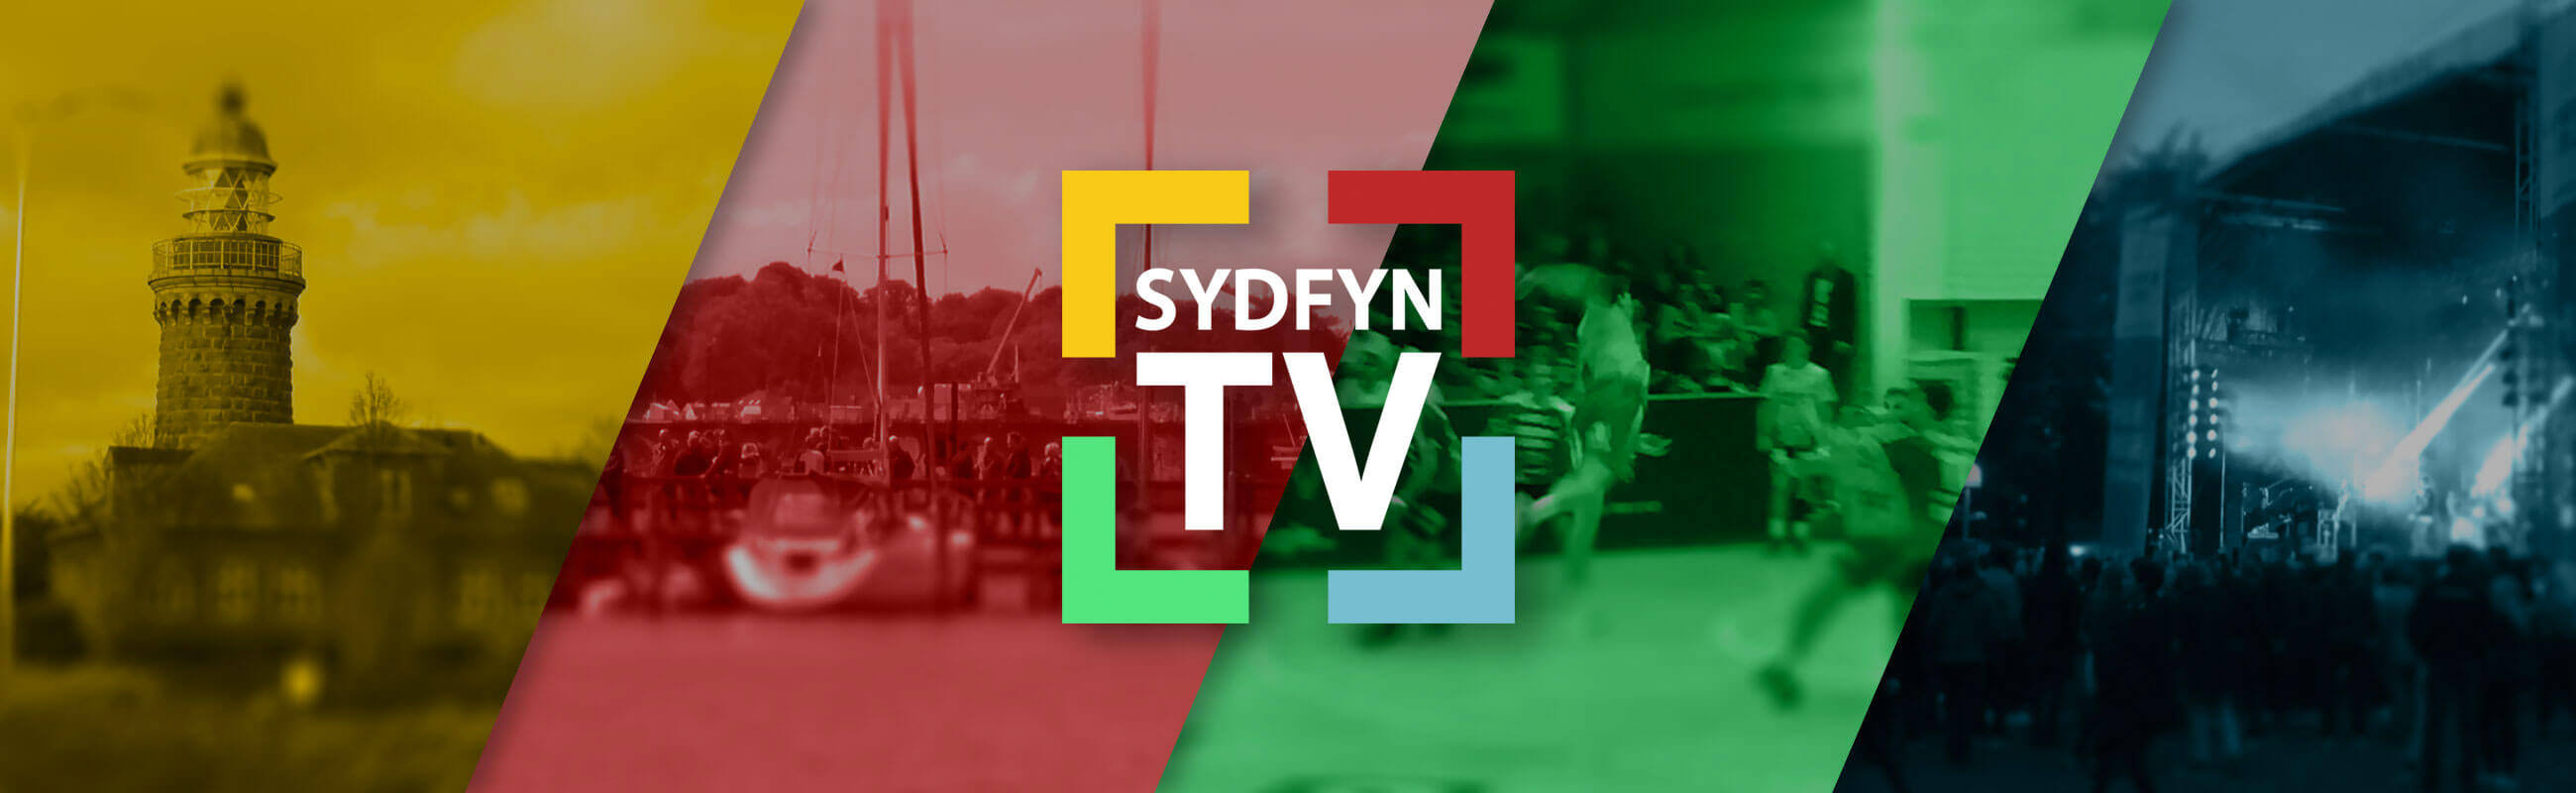 Sydfyn-TV-slider.jpg